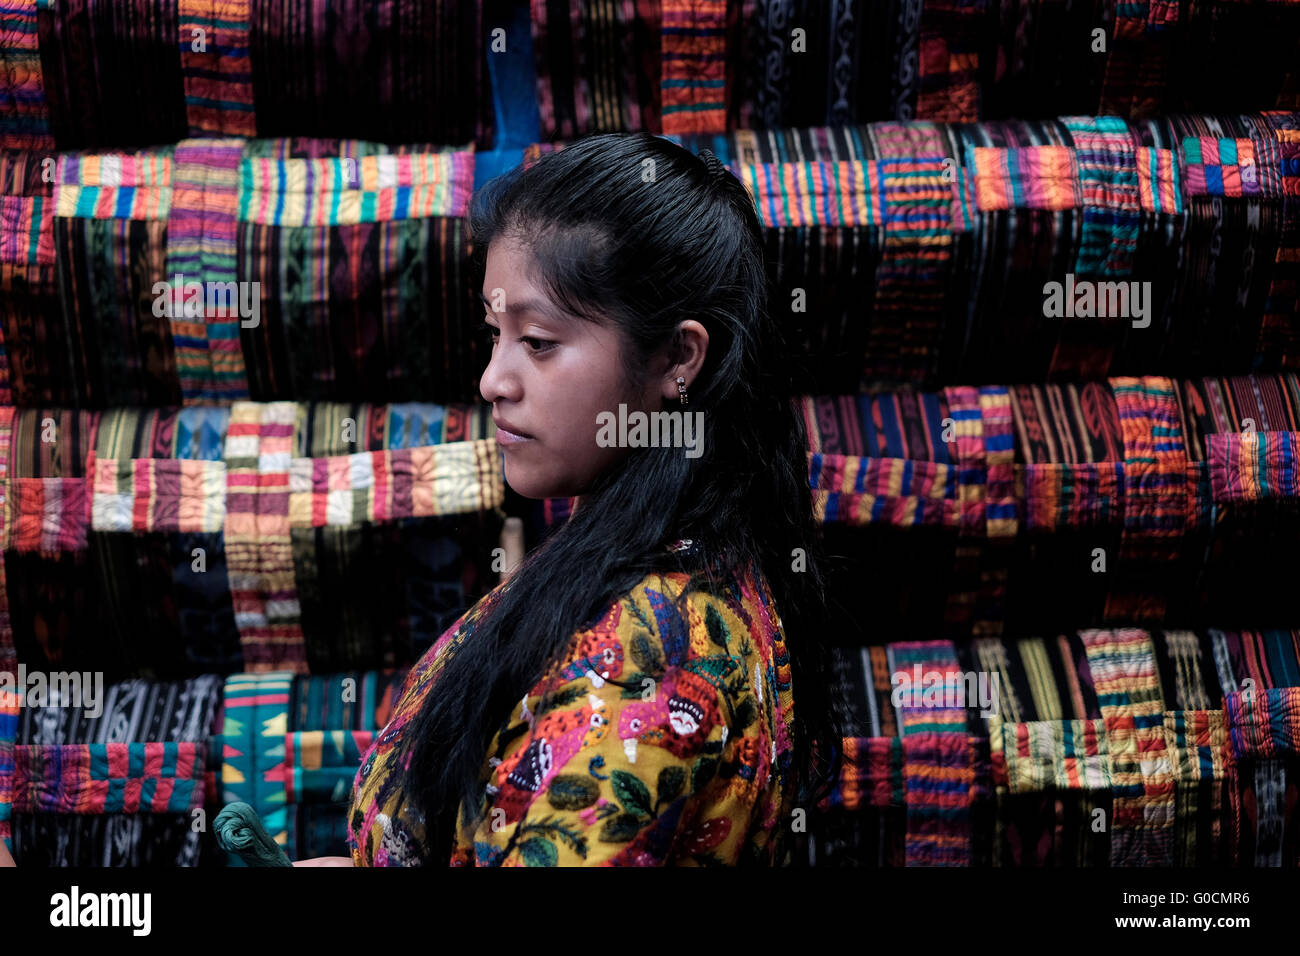 Le marché de Chichicastenango également connu sous le nom de Santo Tomás Chichicastenango une ville dans le département de Guatemala El Quiché, connu pour sa culture Maya Kiche traditionnels. Banque D'Images